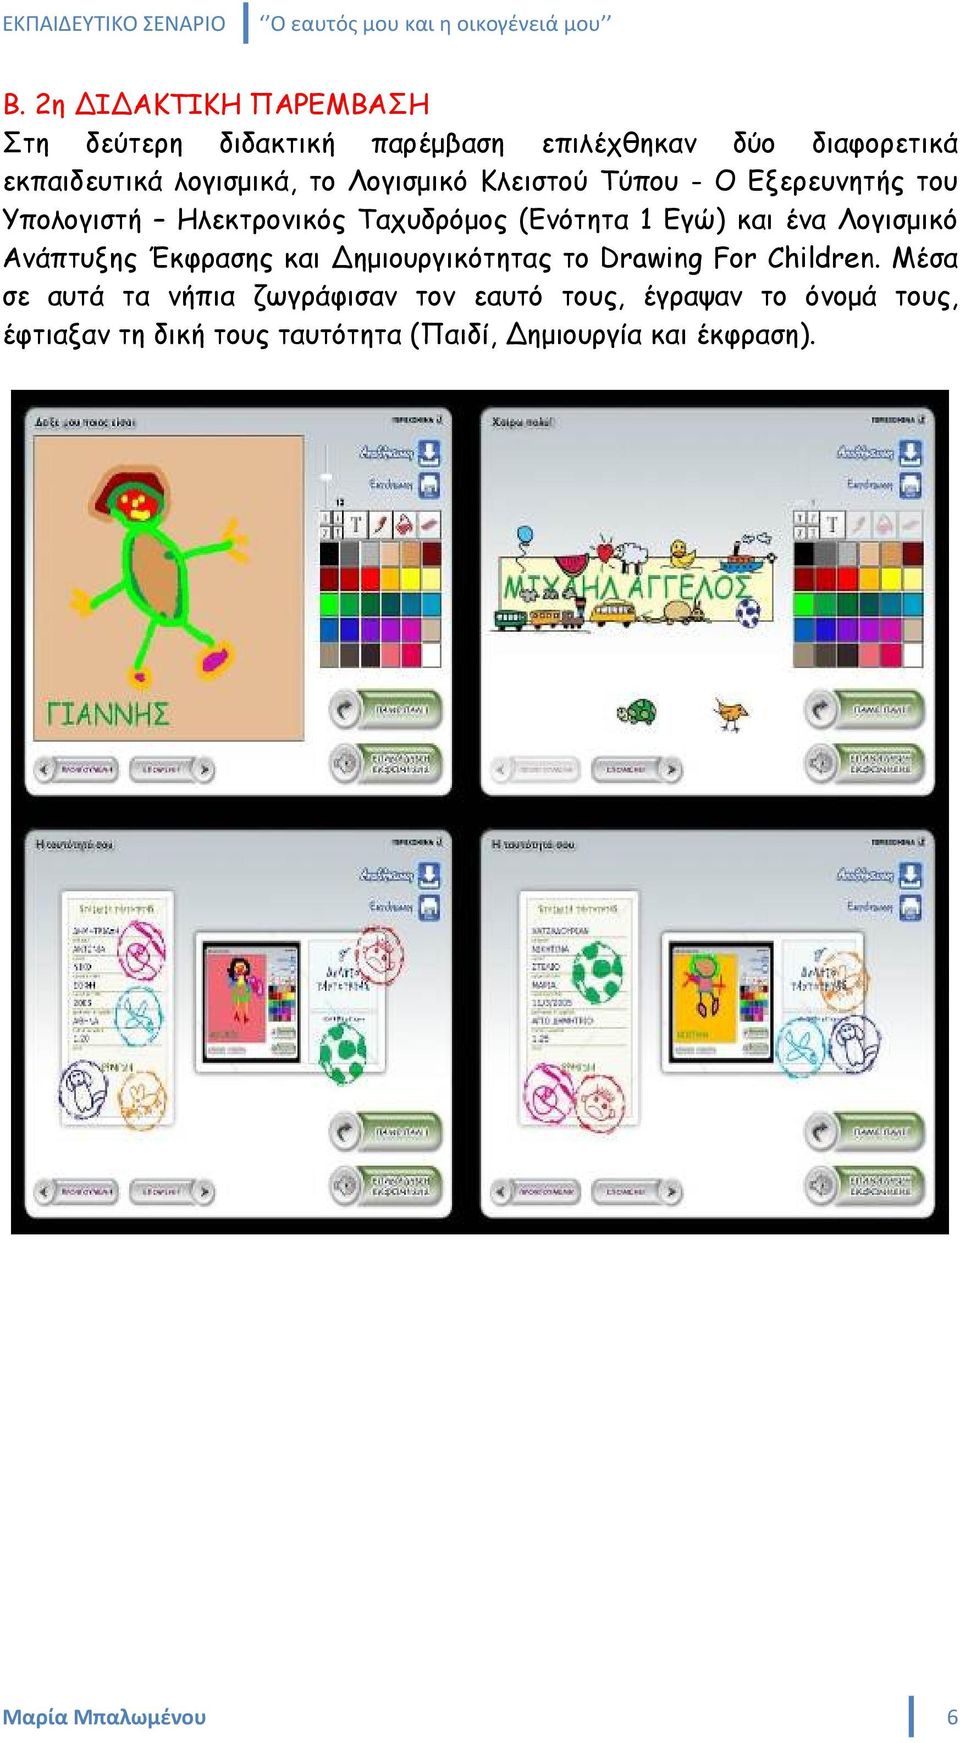 Λογισμικό Ανάπτυξης Έκφρασης και Δημιουργικότητας το Drawing For Children.